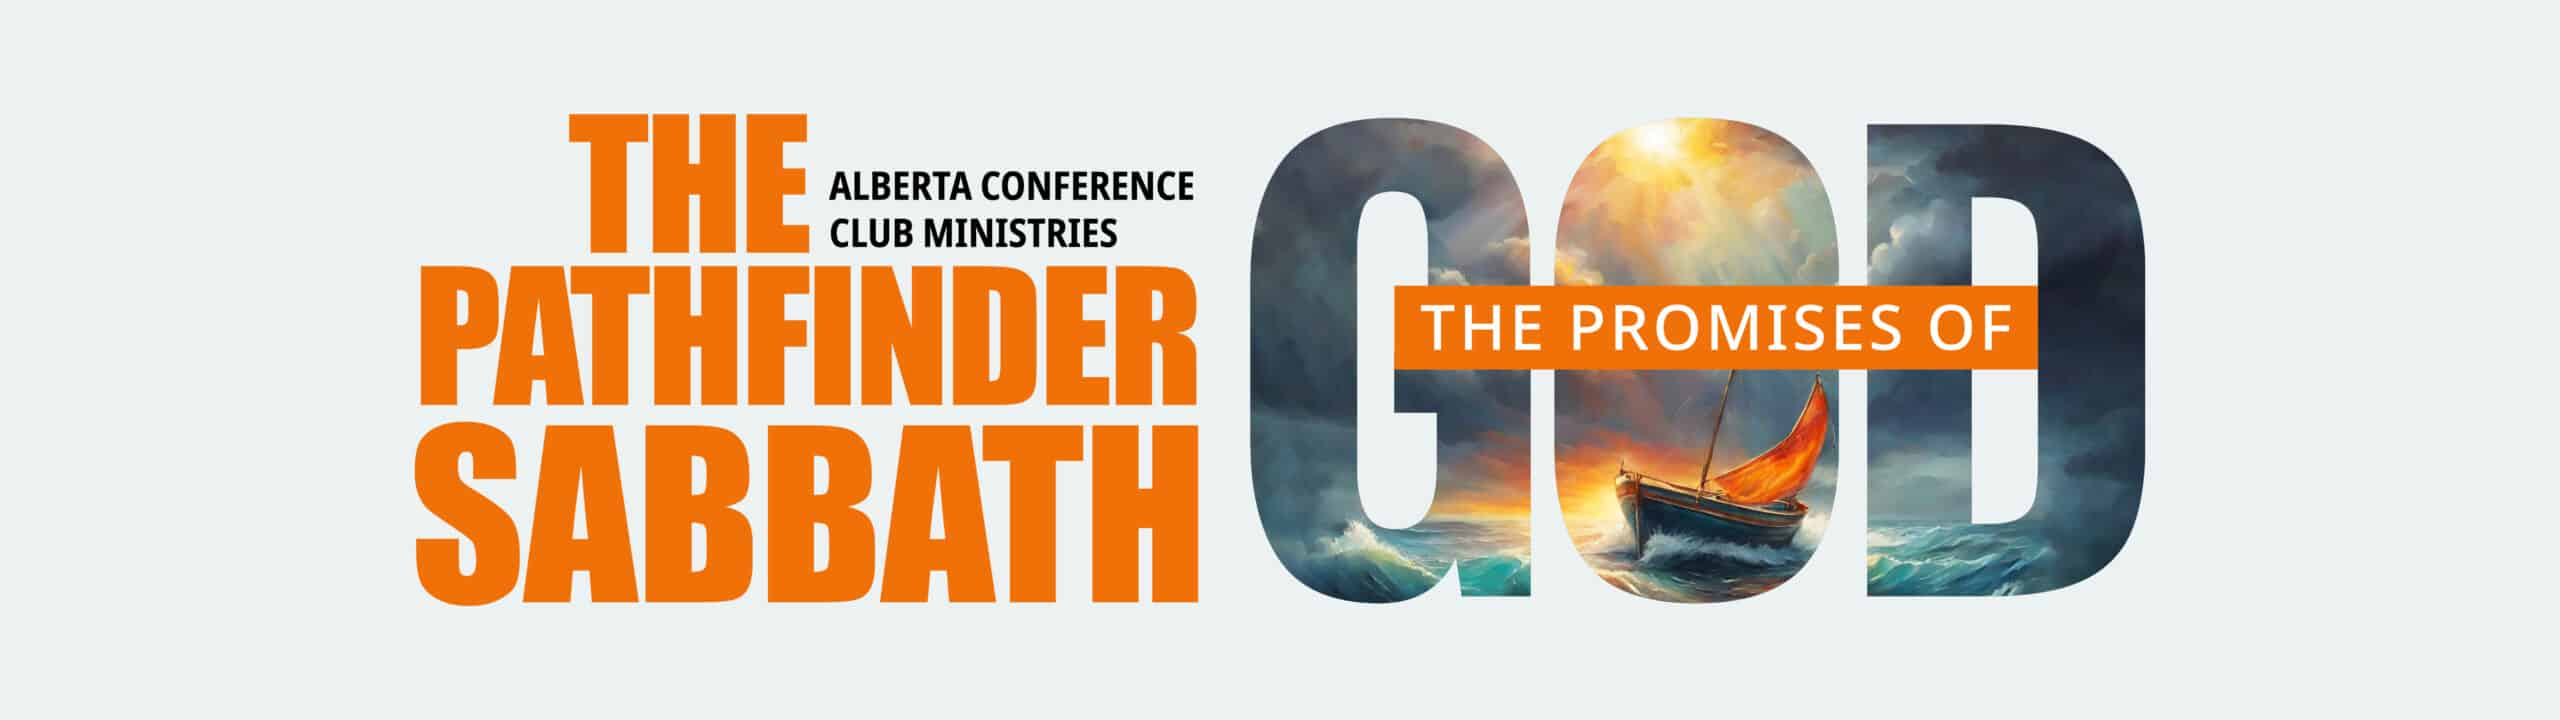 The Pathfinder Sabbath Banner Image